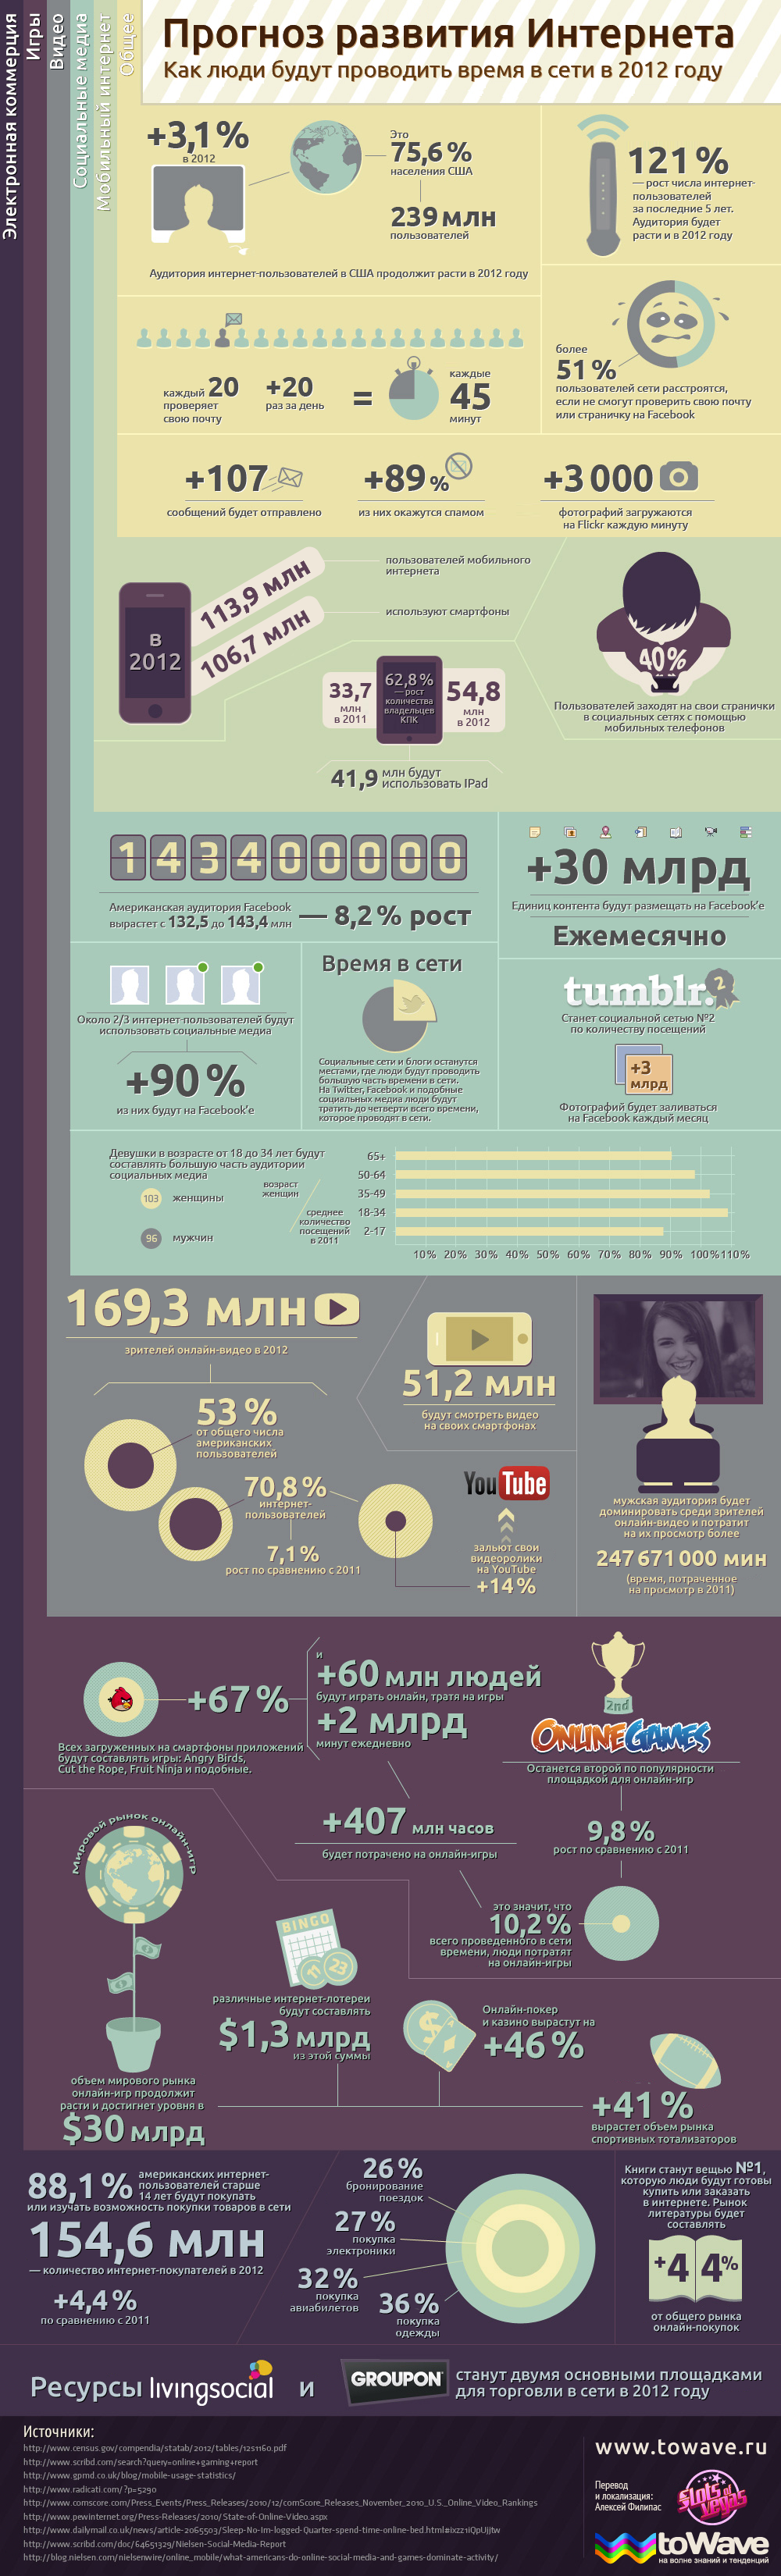 Инфографика: прогноз развития Интернета